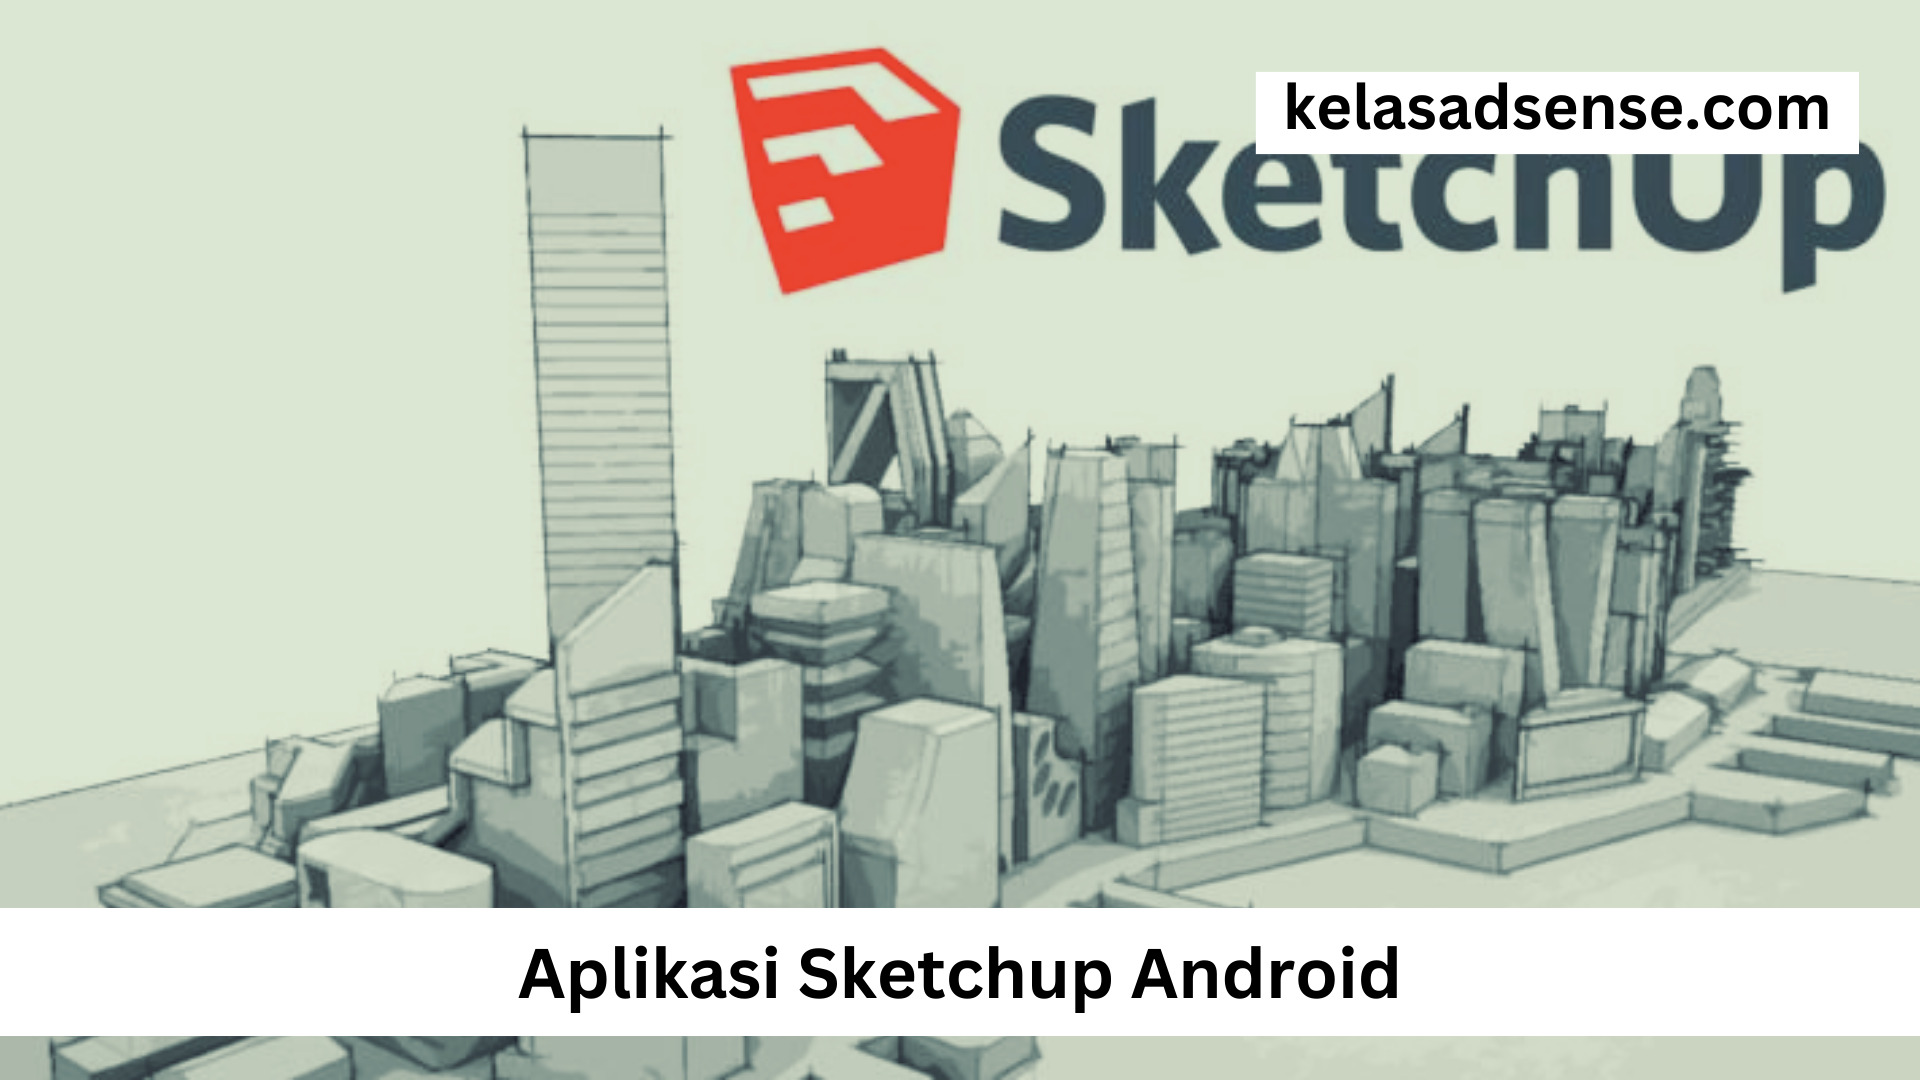 Aplikasi Sketchup Android